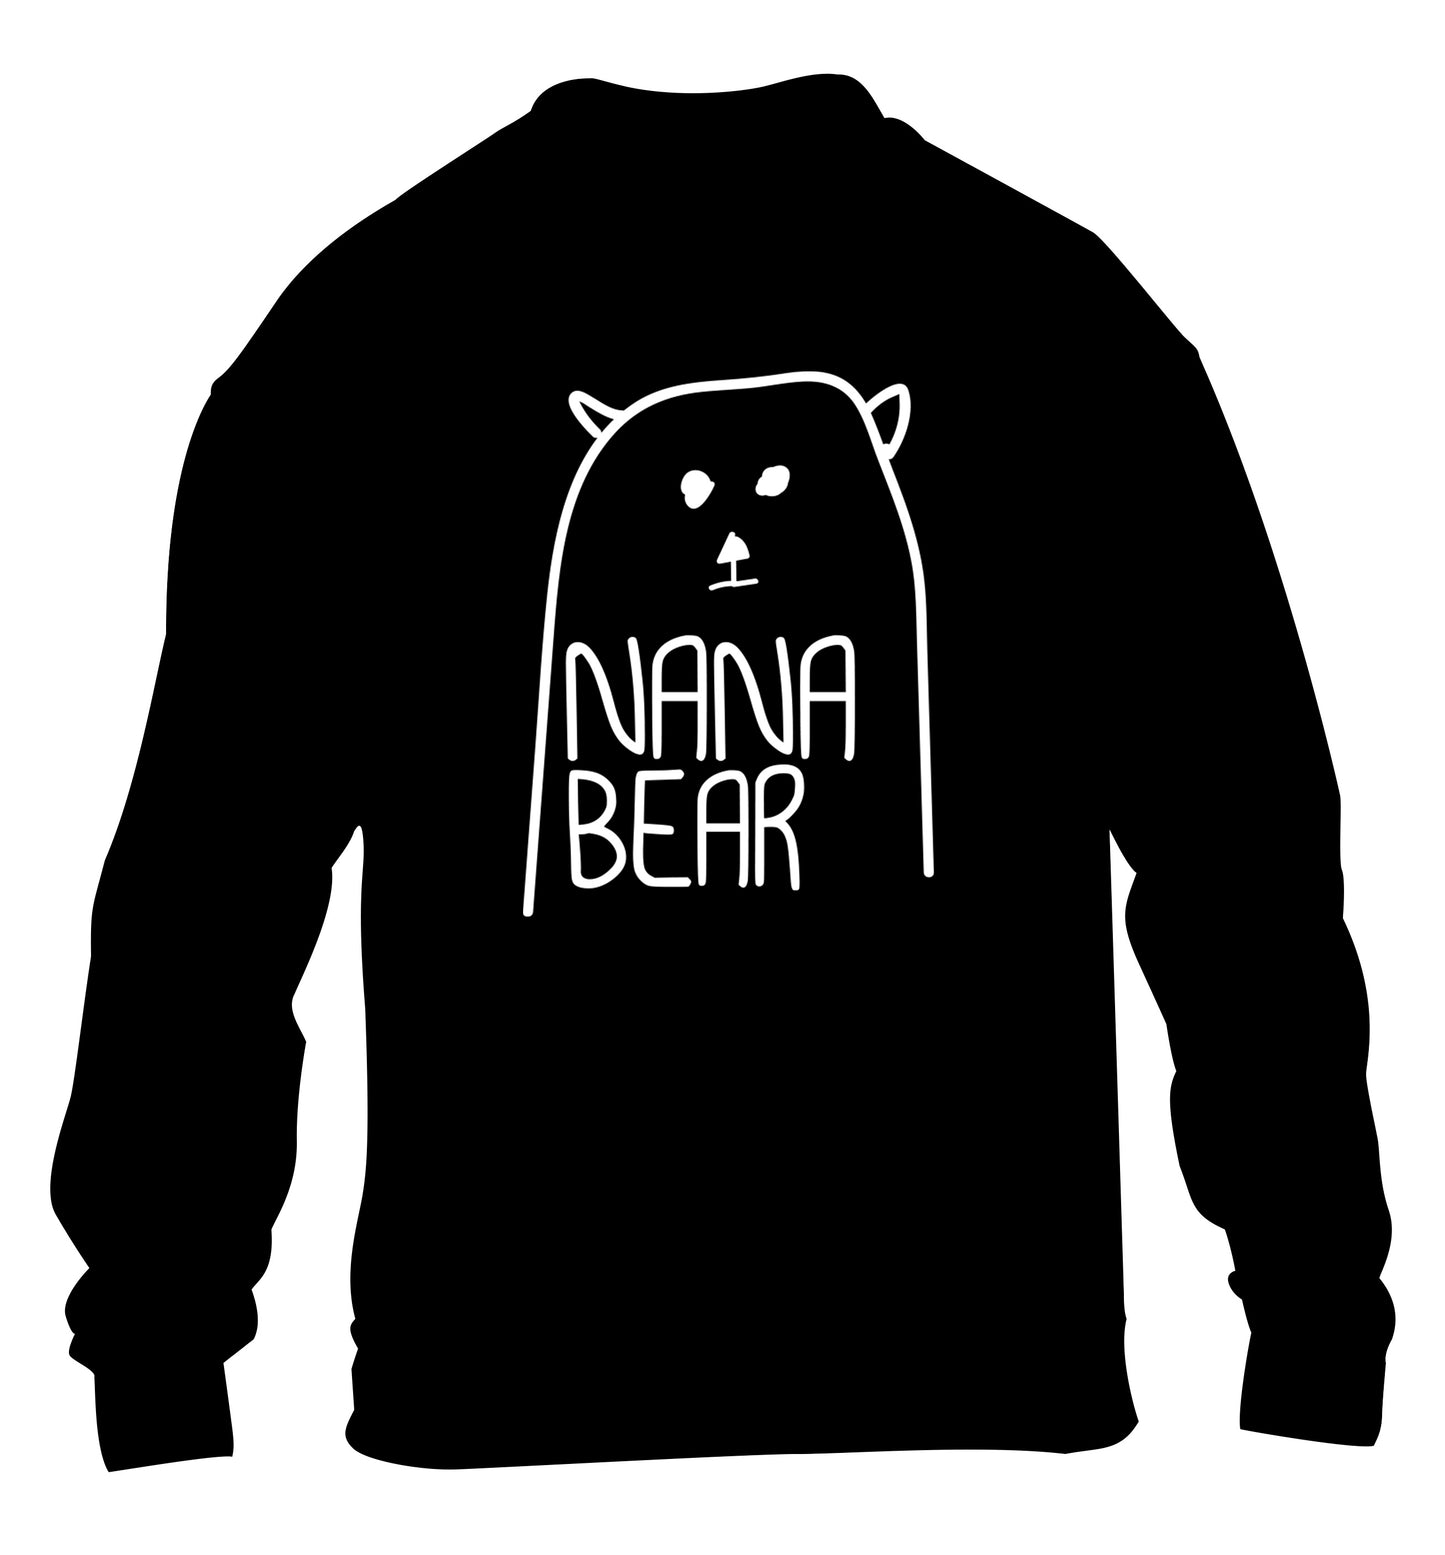 Nana bear children's black sweater 12-13 Years